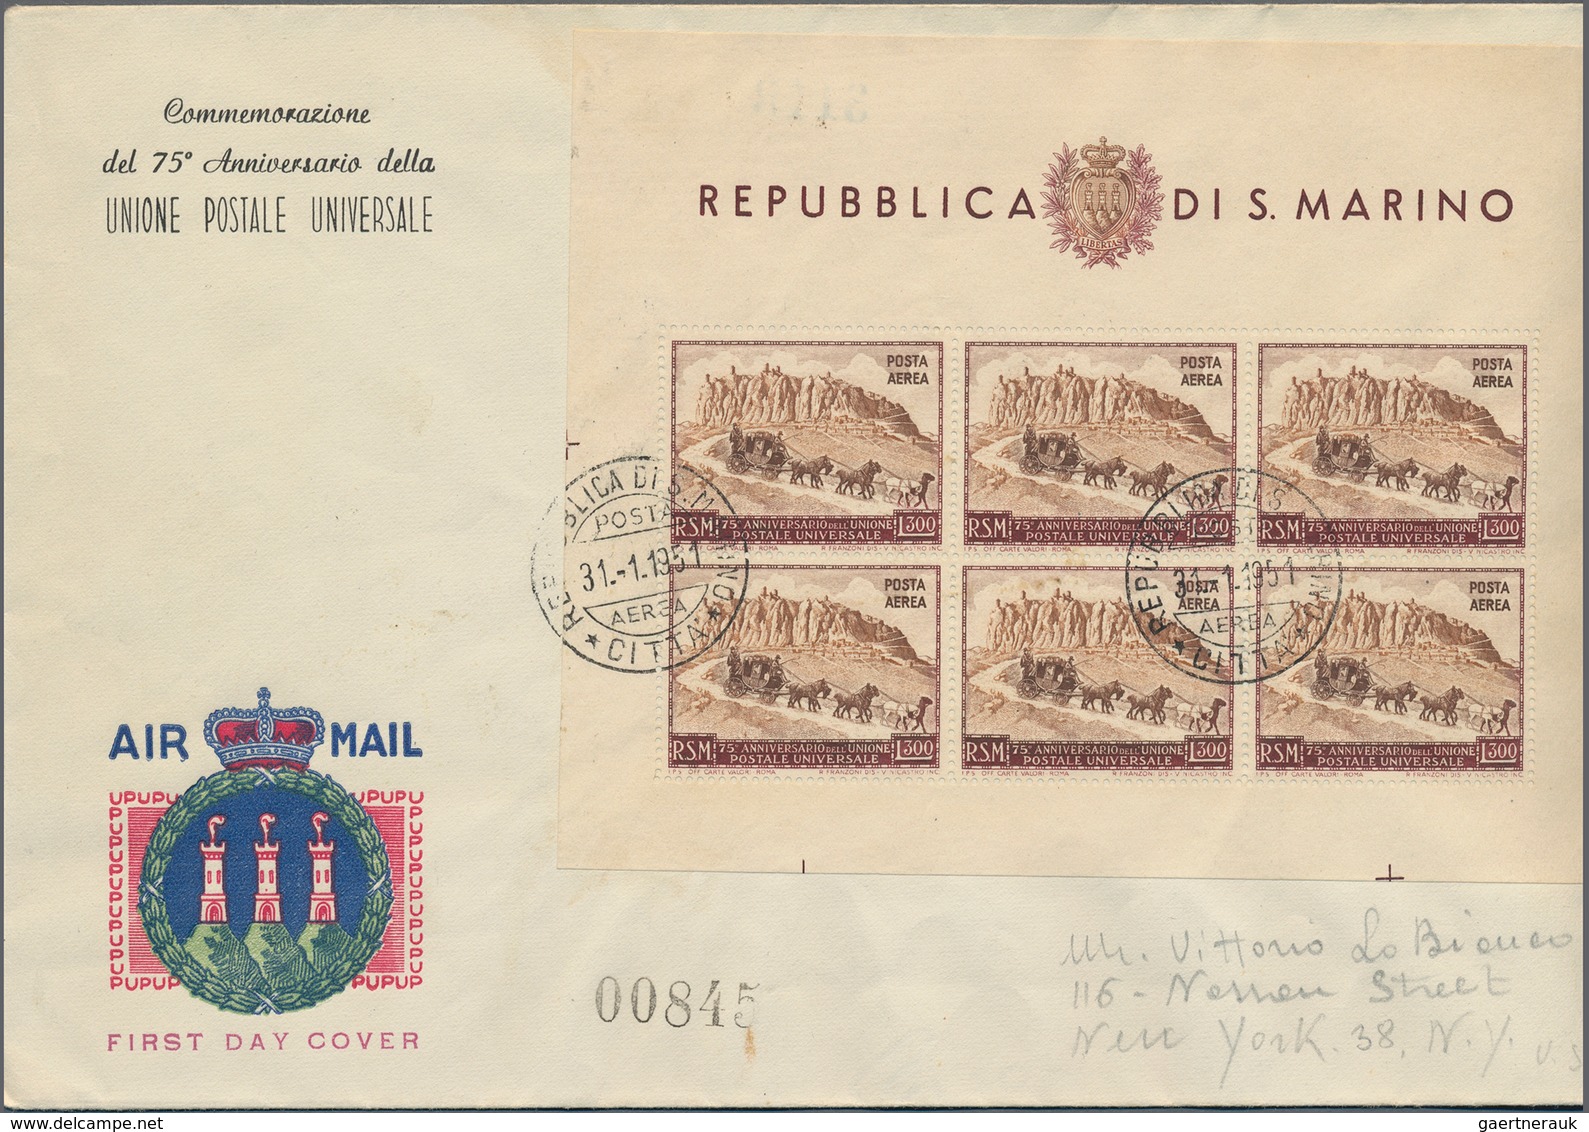 Italien: 1860-1970, spannender Bestand mit rund 350 Briefen, Ganzsachen, Belegen, Ansichtskarten und